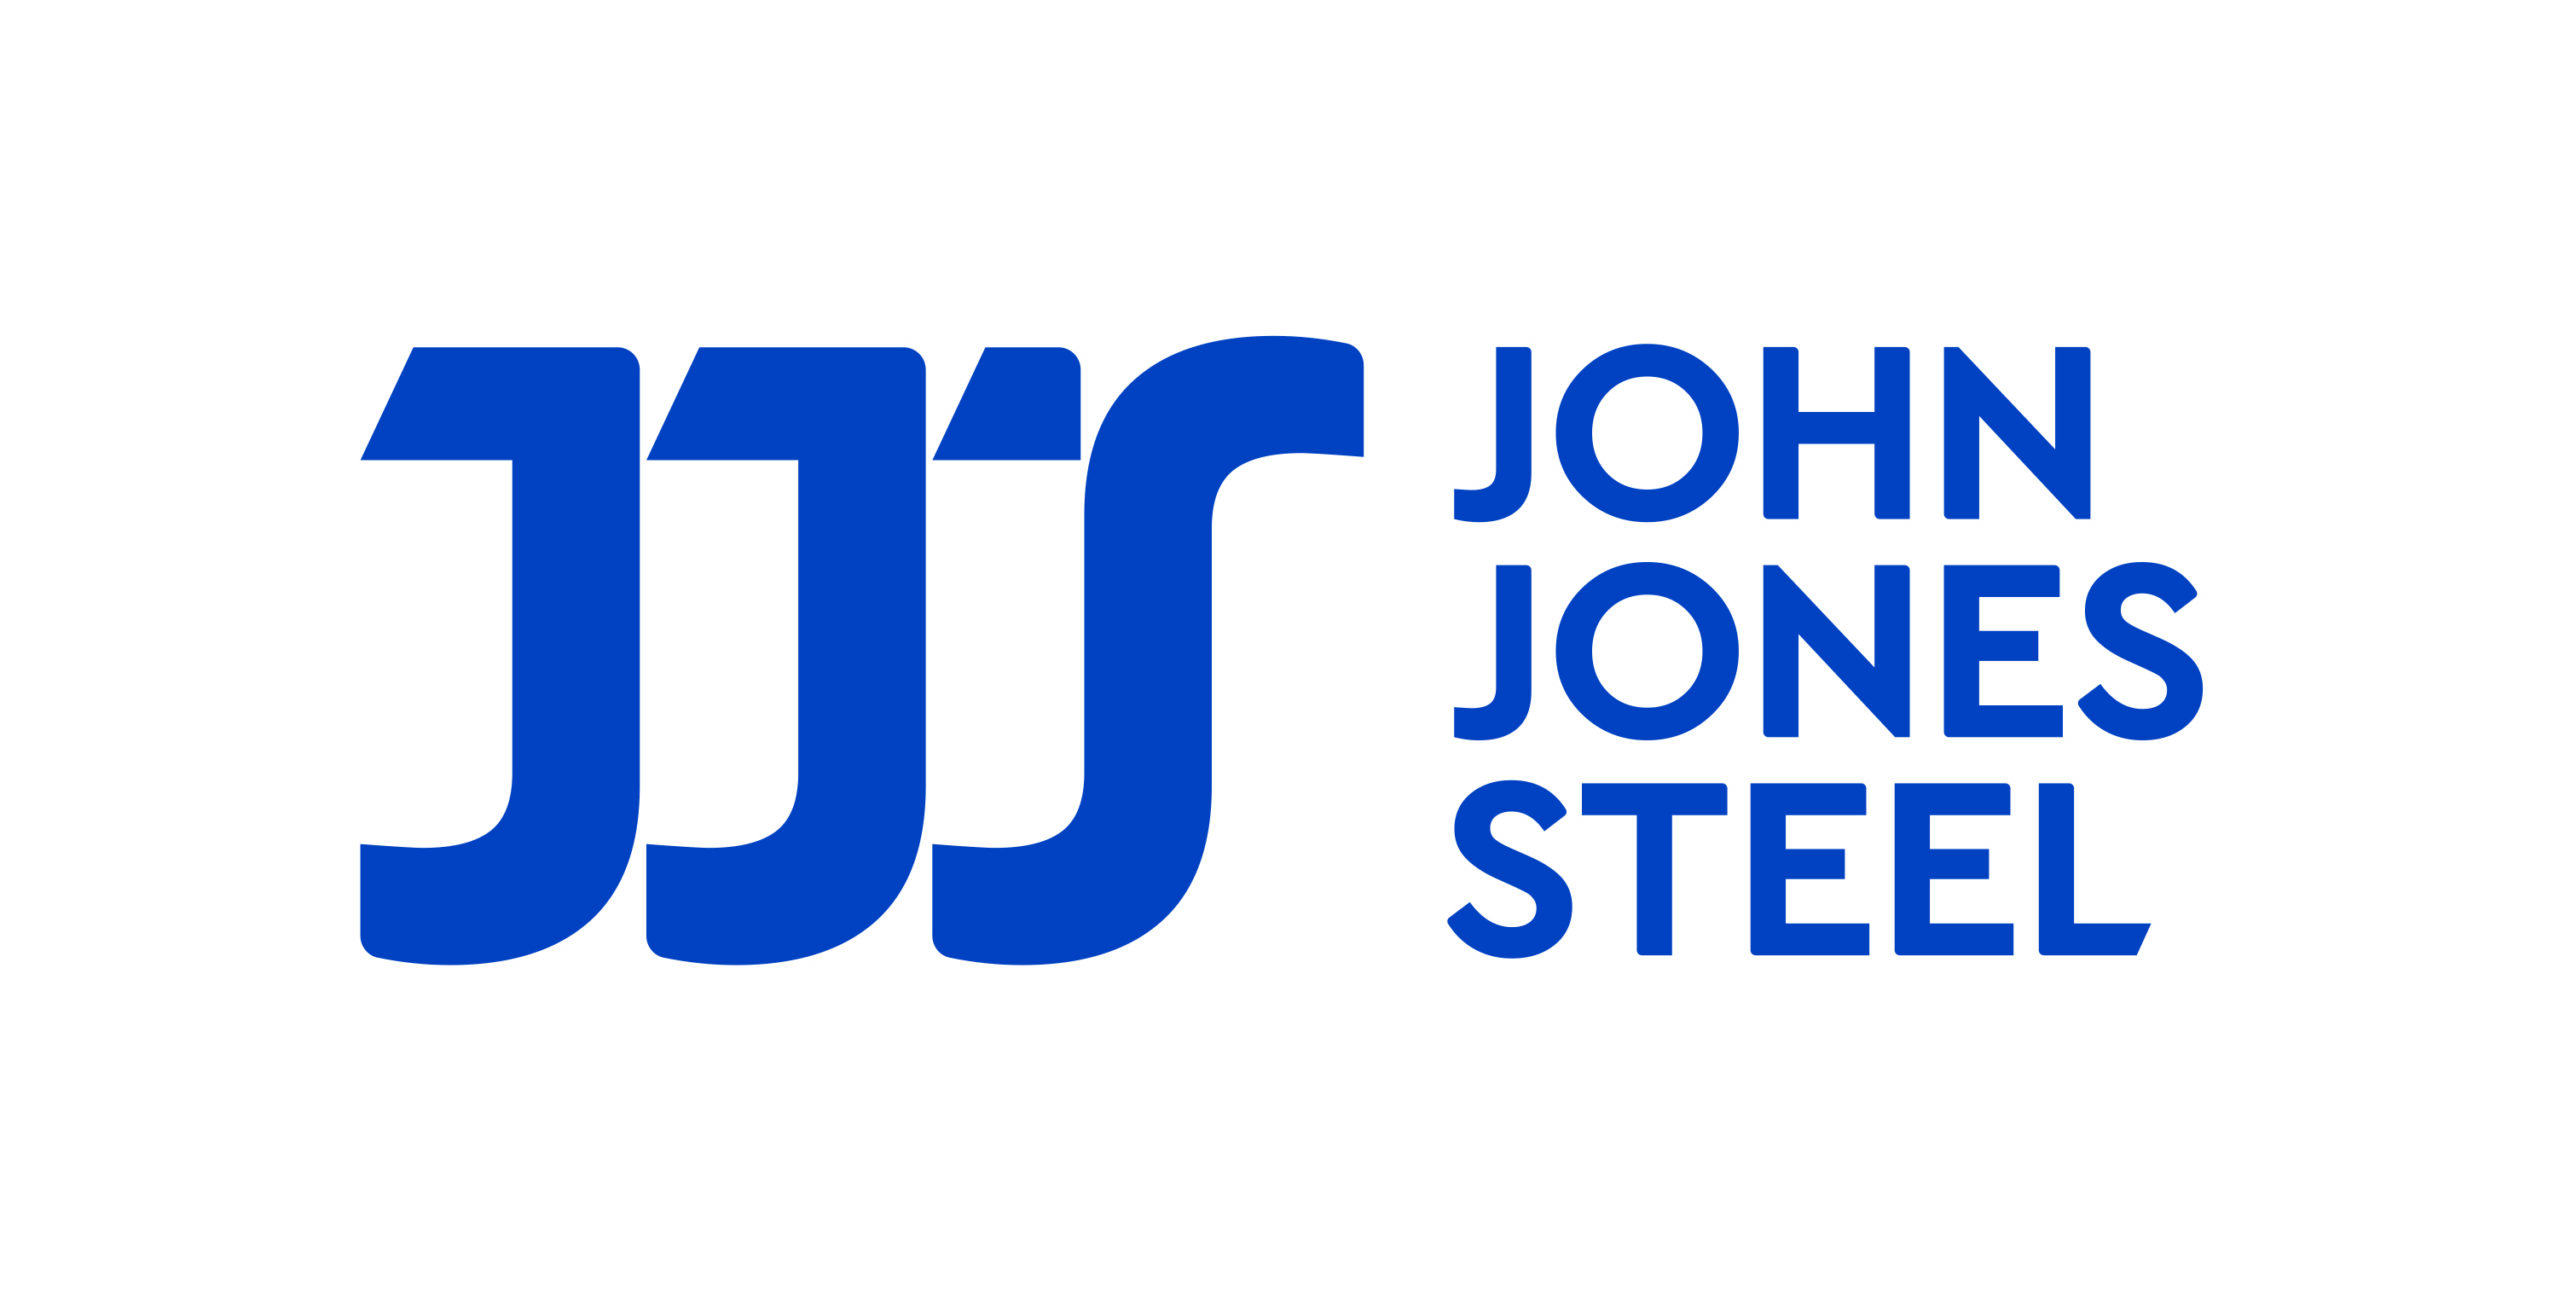 John Jones steel